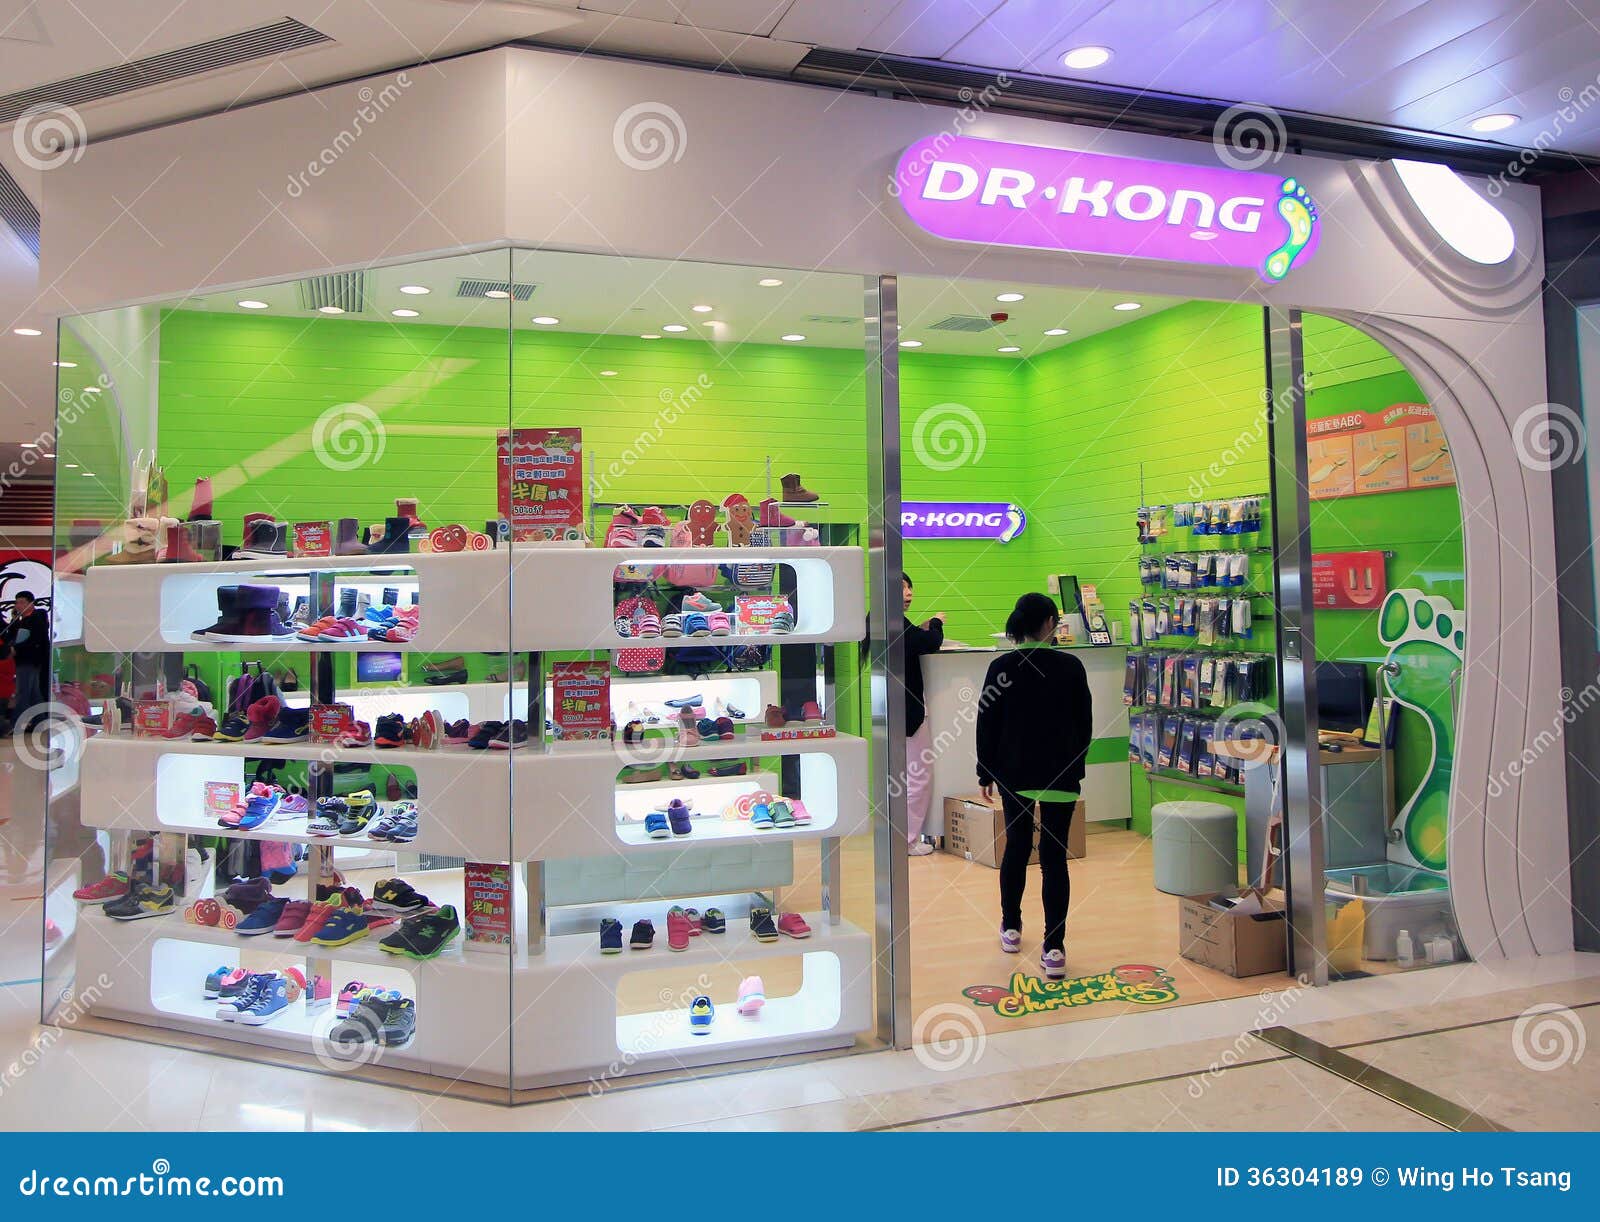  Dr  Kong  shop in hong kong  editorial stock image Image of 